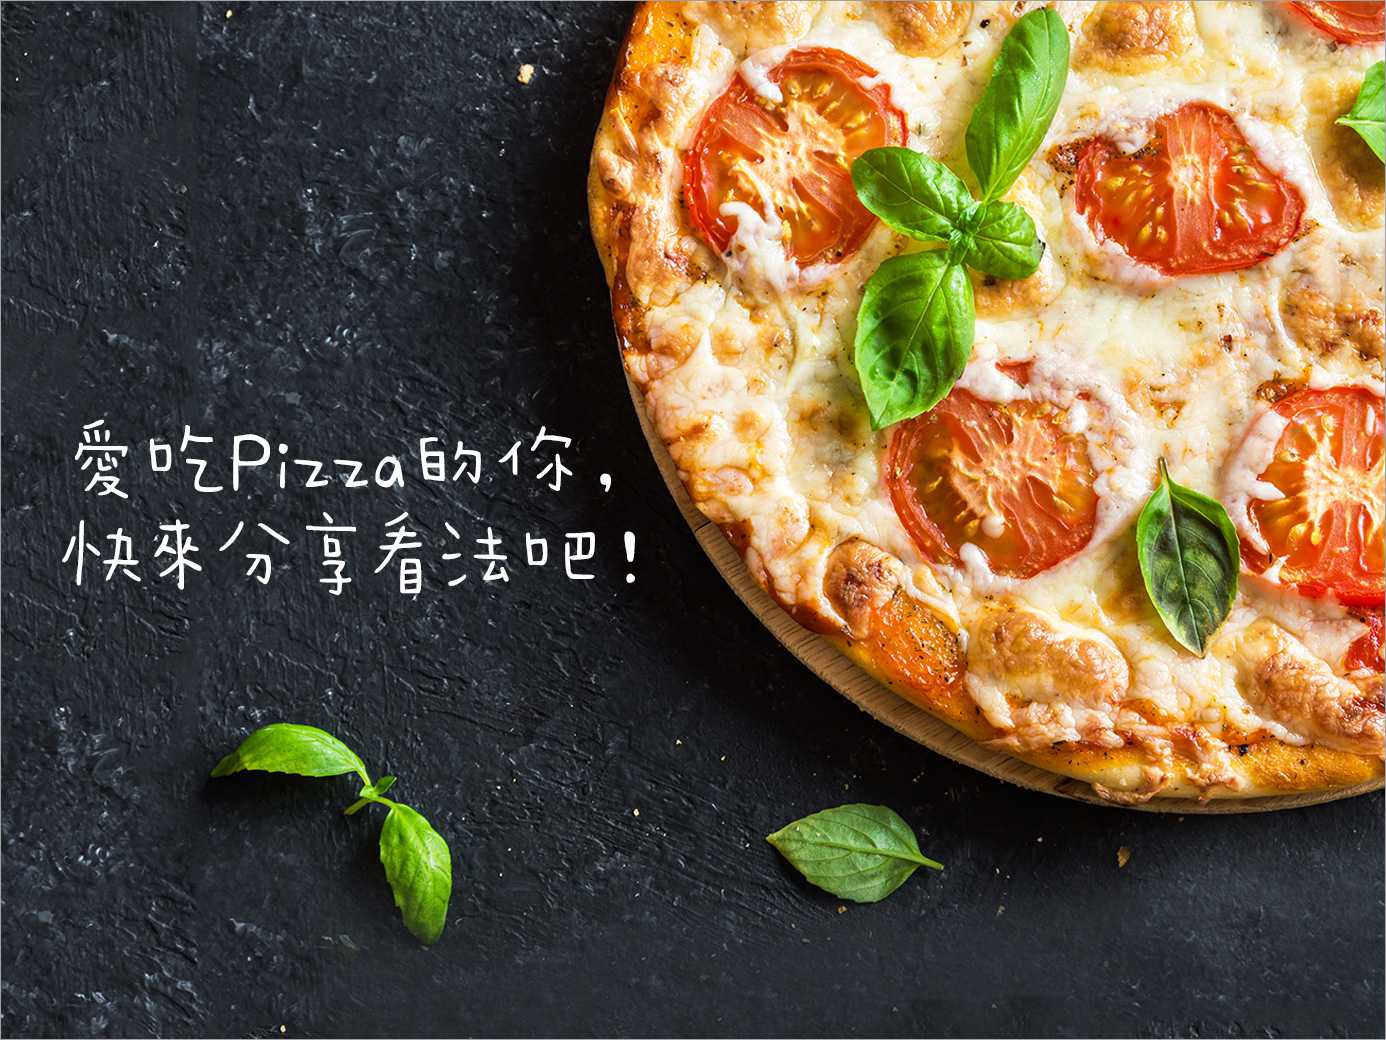 相信大家都喜愛吃pizza，而你對pizza又有什麼想法呢？快來與我們分享吧！